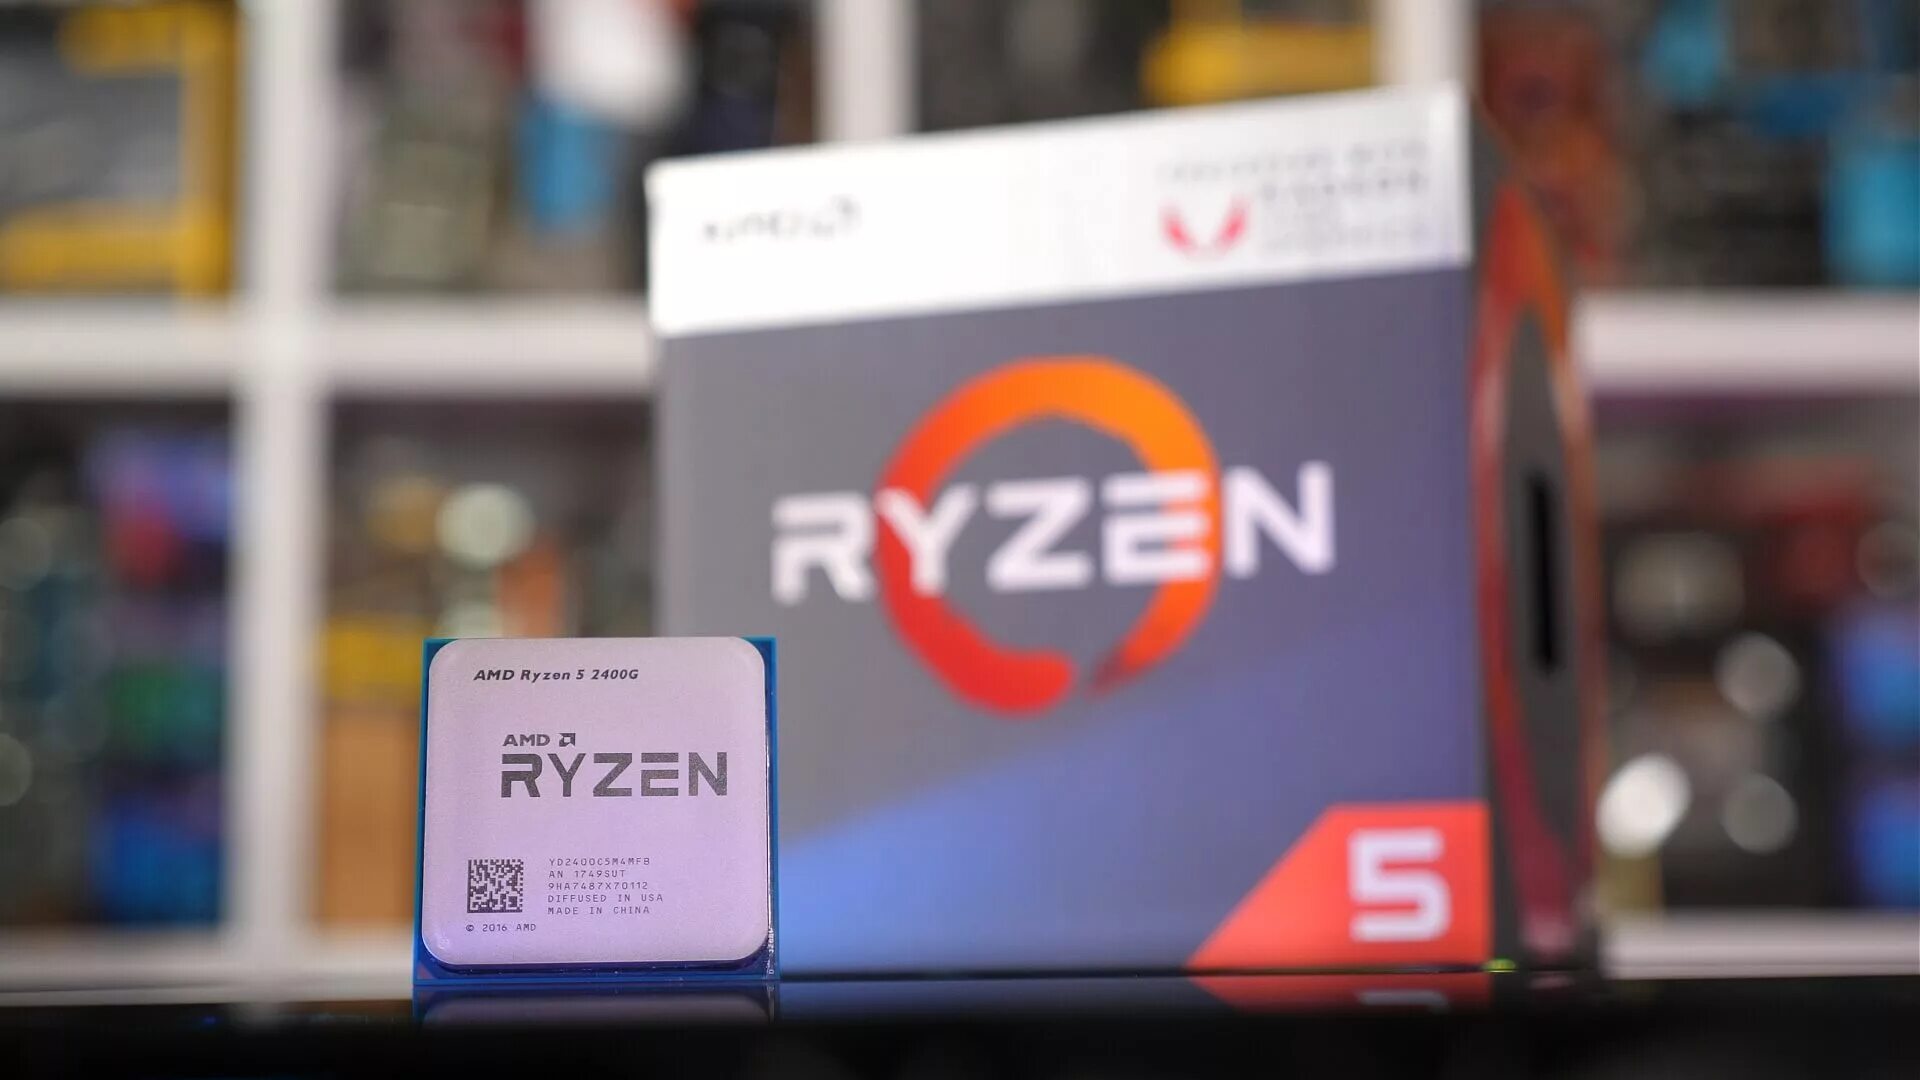 Amd ryzen 5 сборка. Ryzen 5 2400g. AMD Ryzen 5 Pro 2400g. AMD Ryzen 5 Pro 2400g Box. AMD Risen 5 2400g.